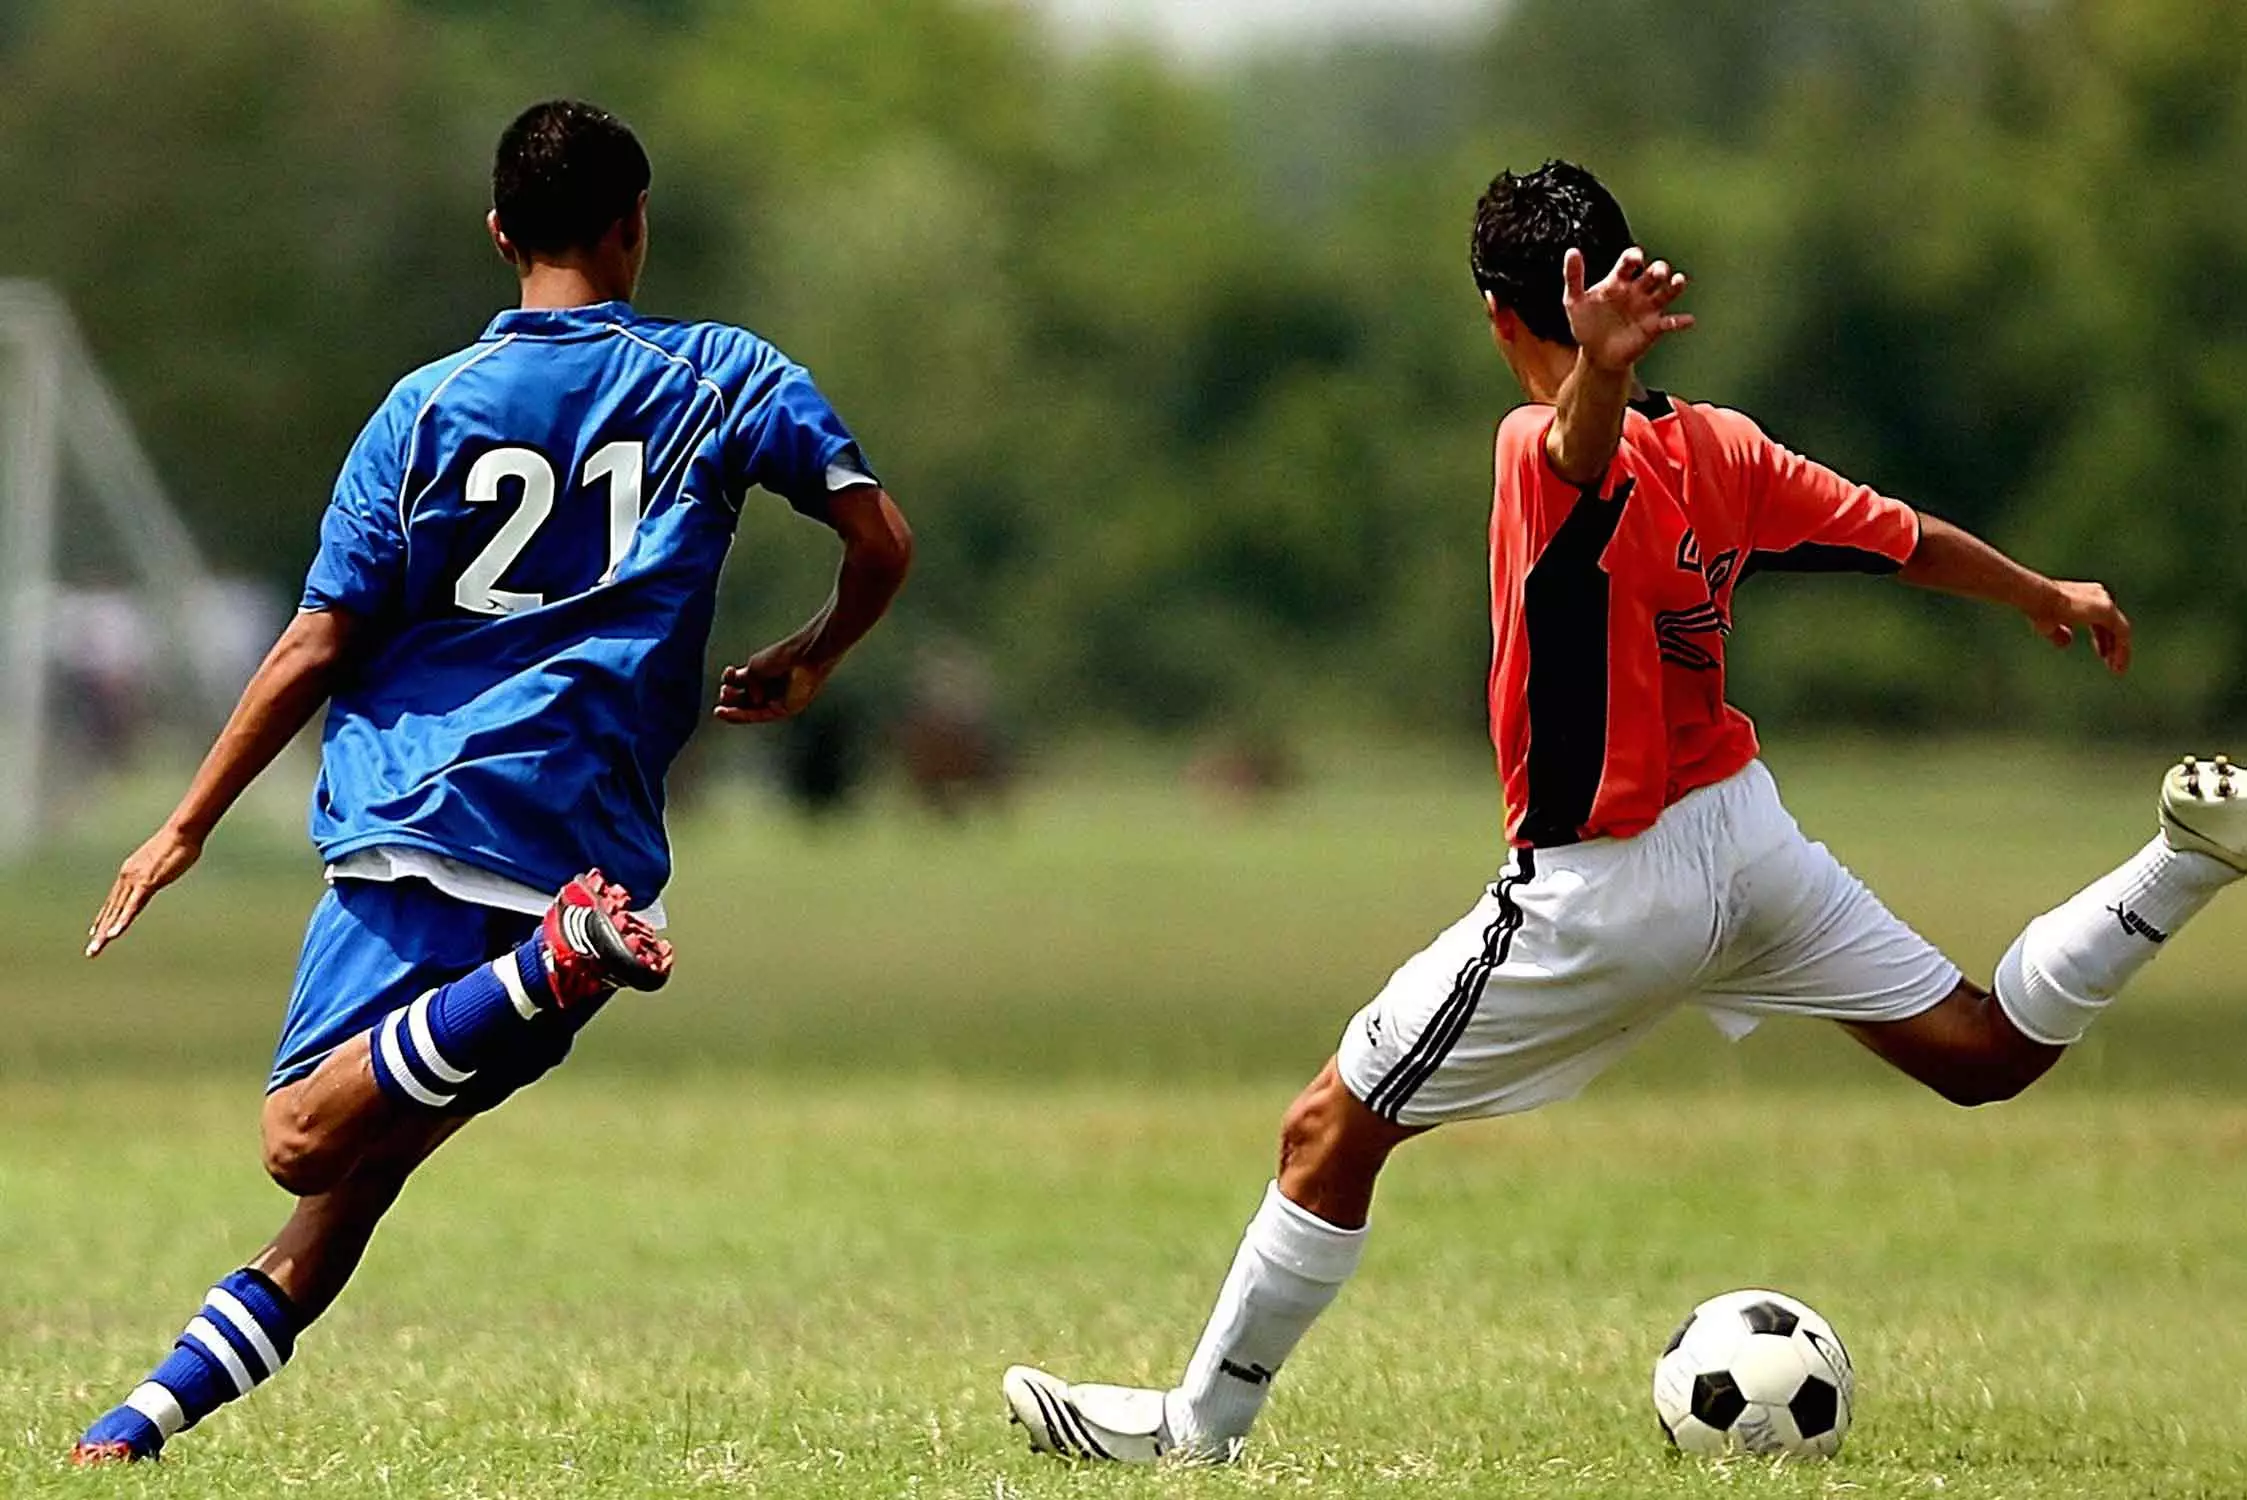 Guía De Apuestas De Fútbol | ¿Cómo Apostar En Fútbol?